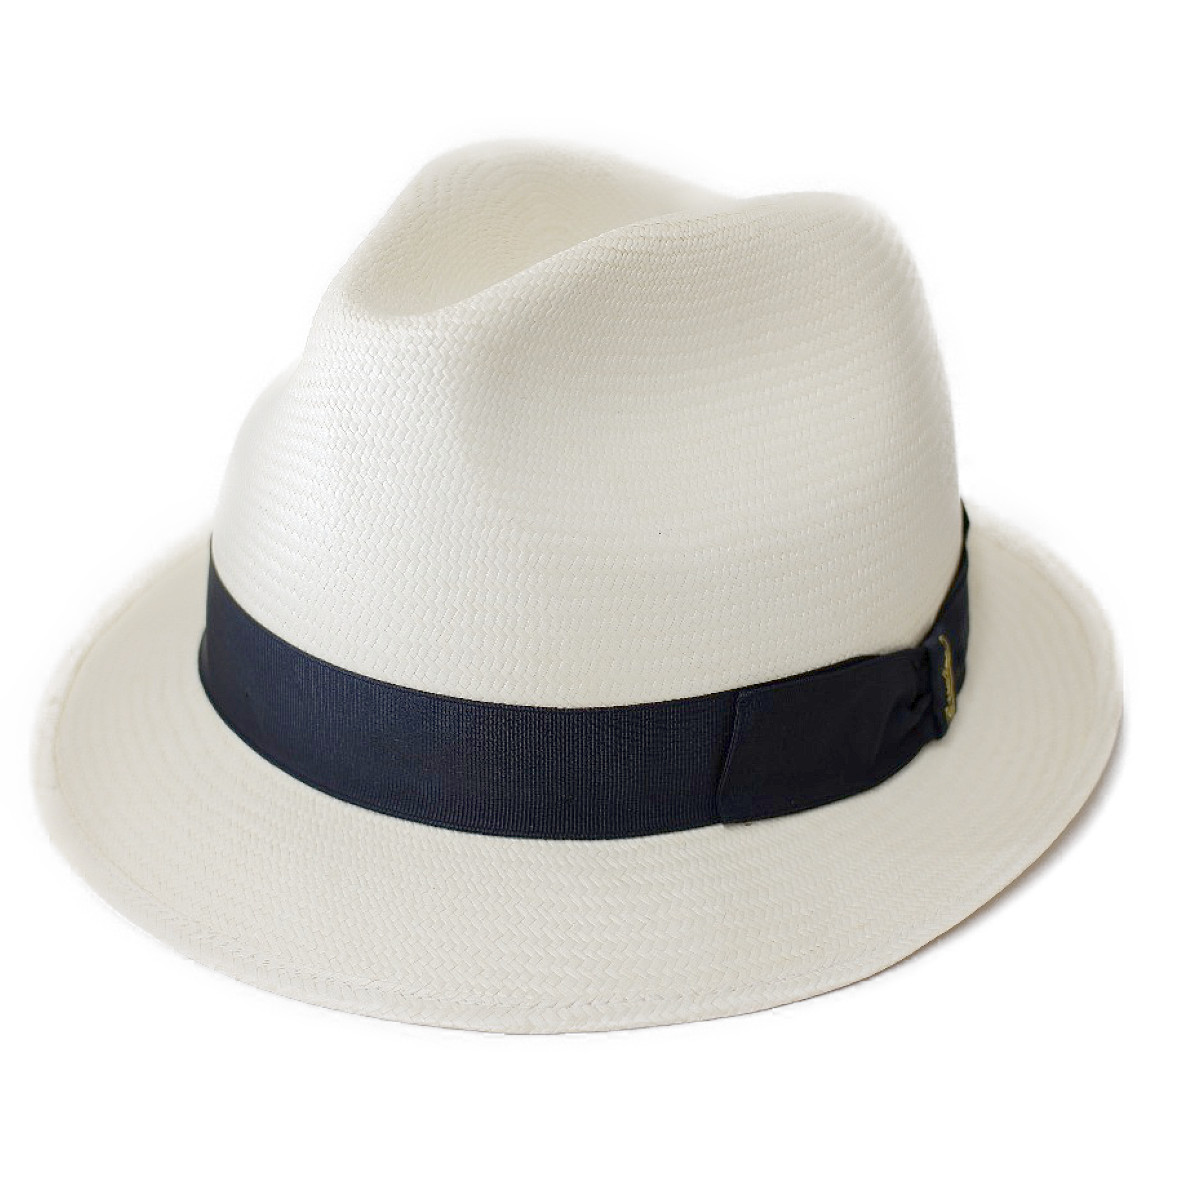 ボルサリーノのオフホワイト×ブラック　黒リボン パナマハット/ 帽子(141055、PANAMA FINE)　の買取実績です。